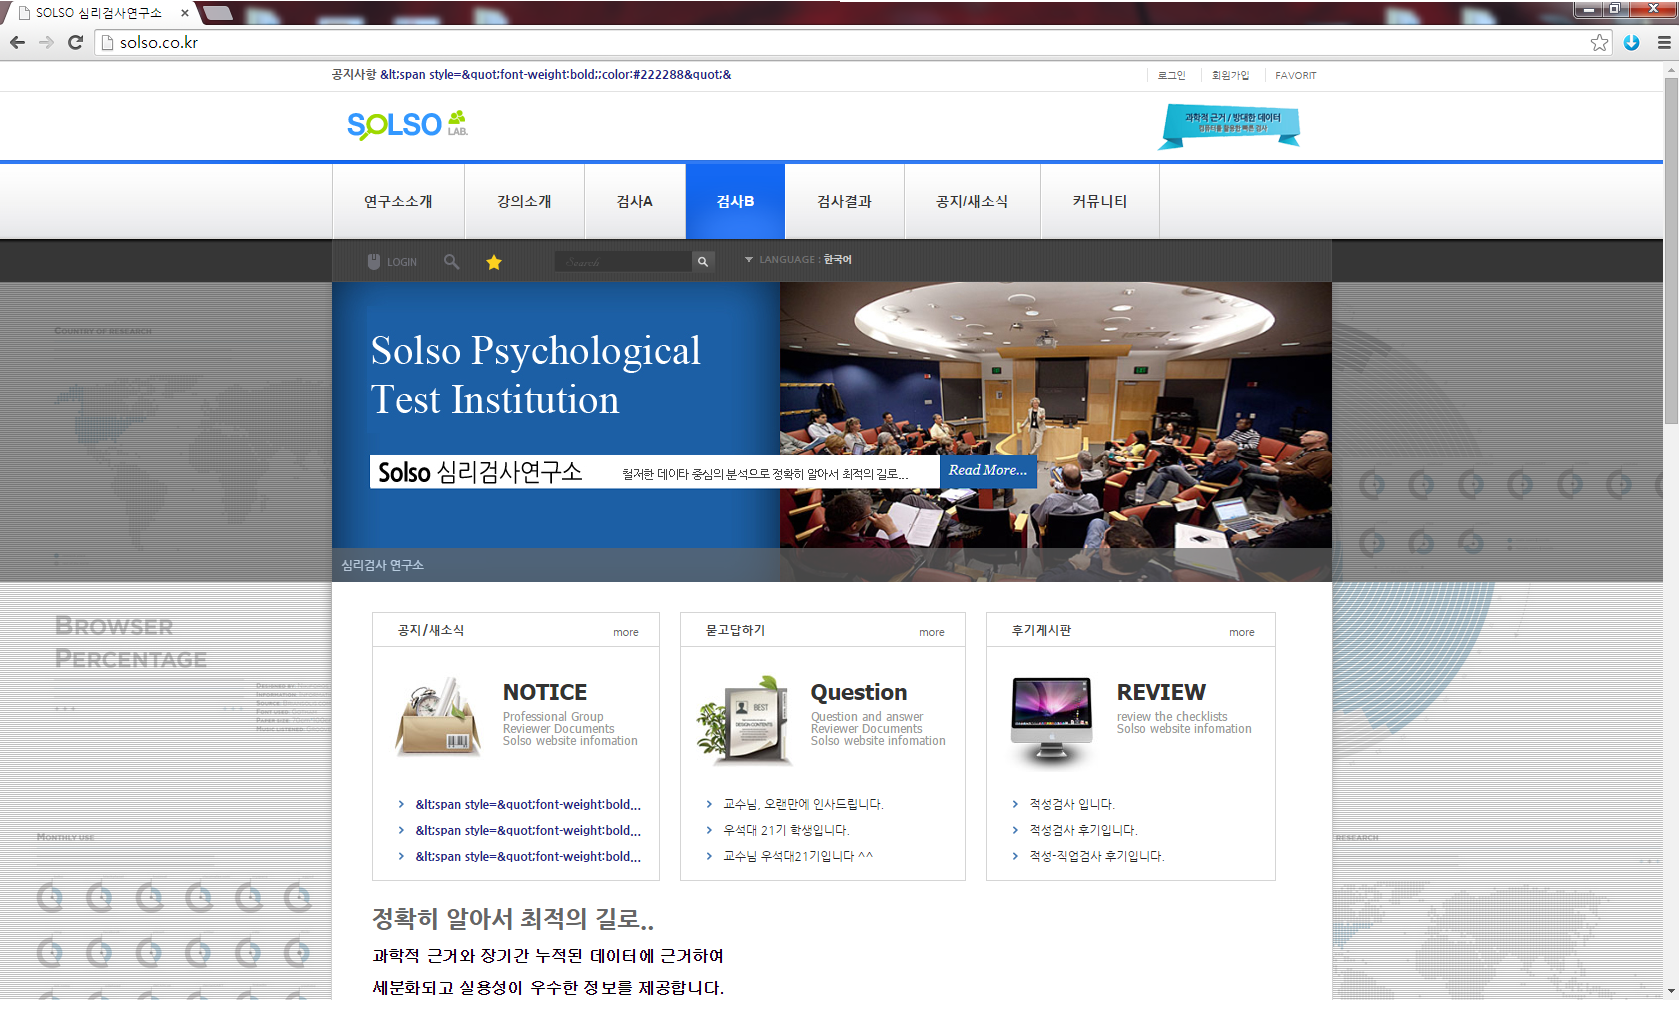 SOLSO 심리검사연구소 사이트 및 온라인심리검사 6종 개발